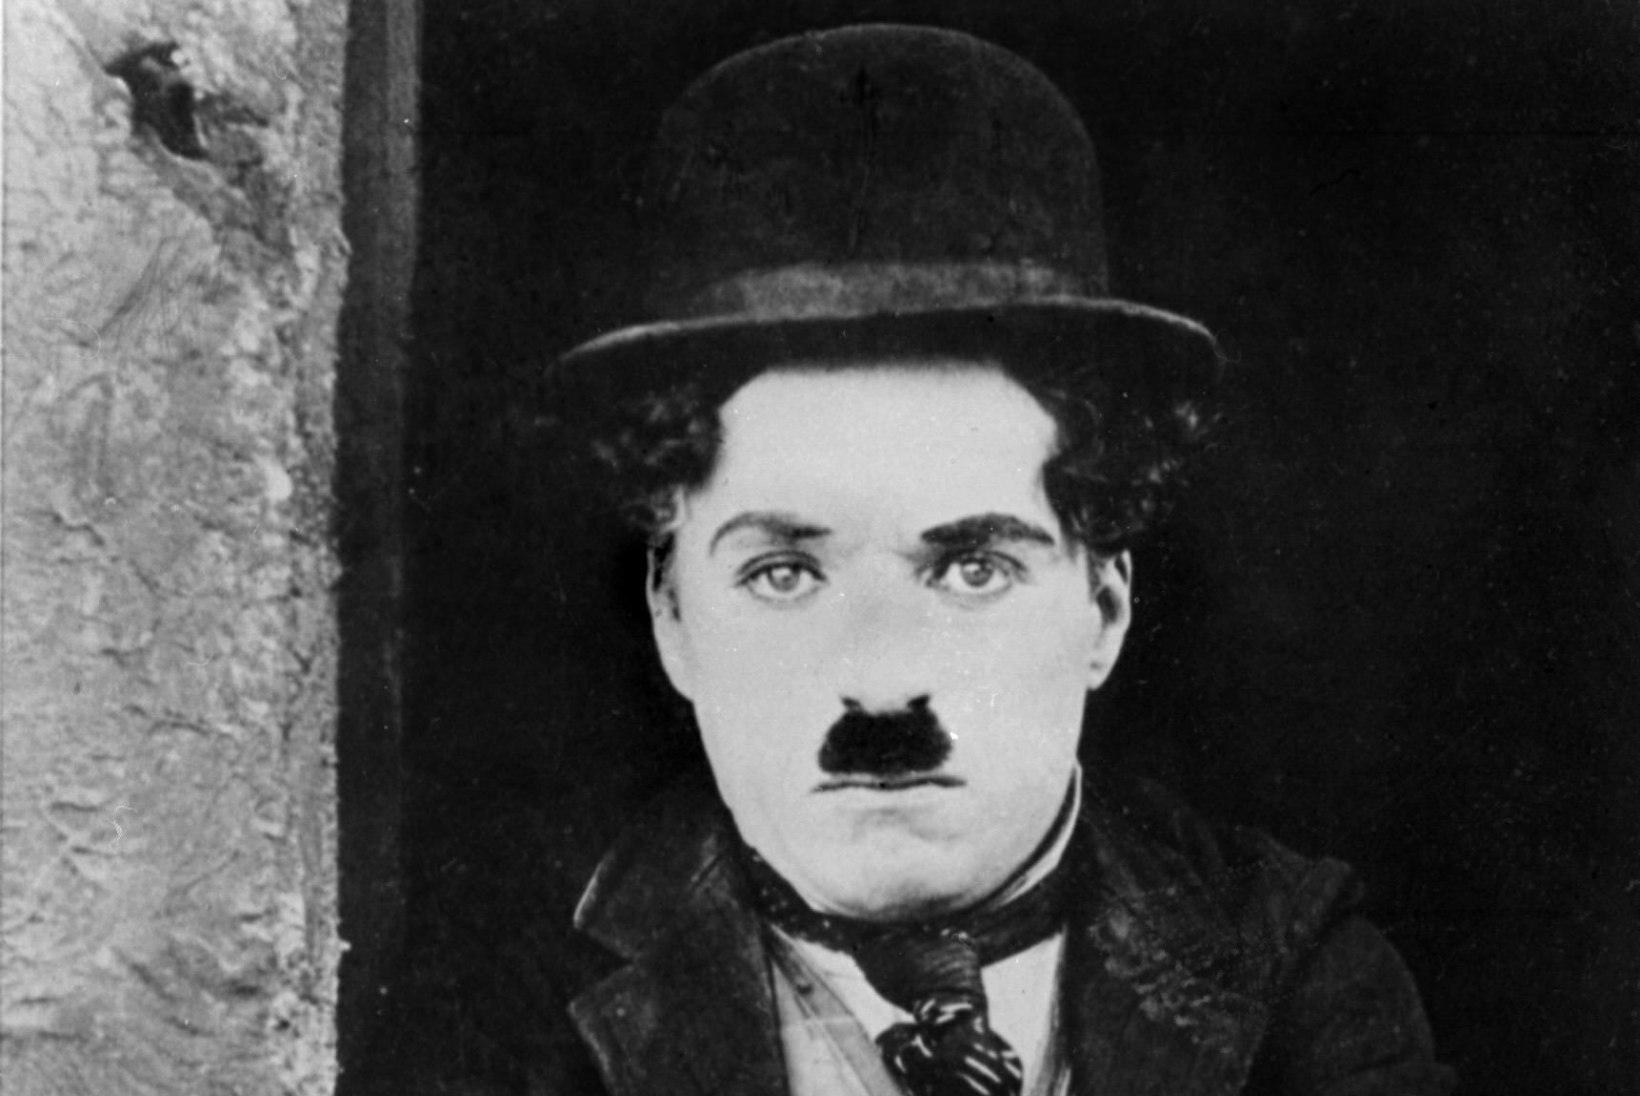 Chaplini omaksed anuvad kinomuuseumi päästmist